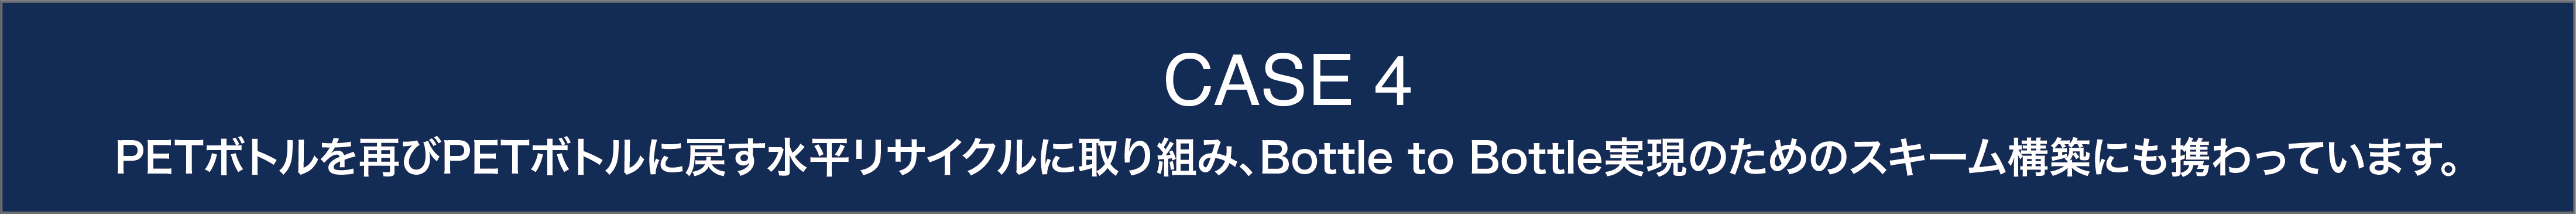 CASE4 PETボトルを再びPETボトルに戻す水平リサイクルに取り組み、Bottle to Bottle実現のためのスキーム構築にも携わっています。